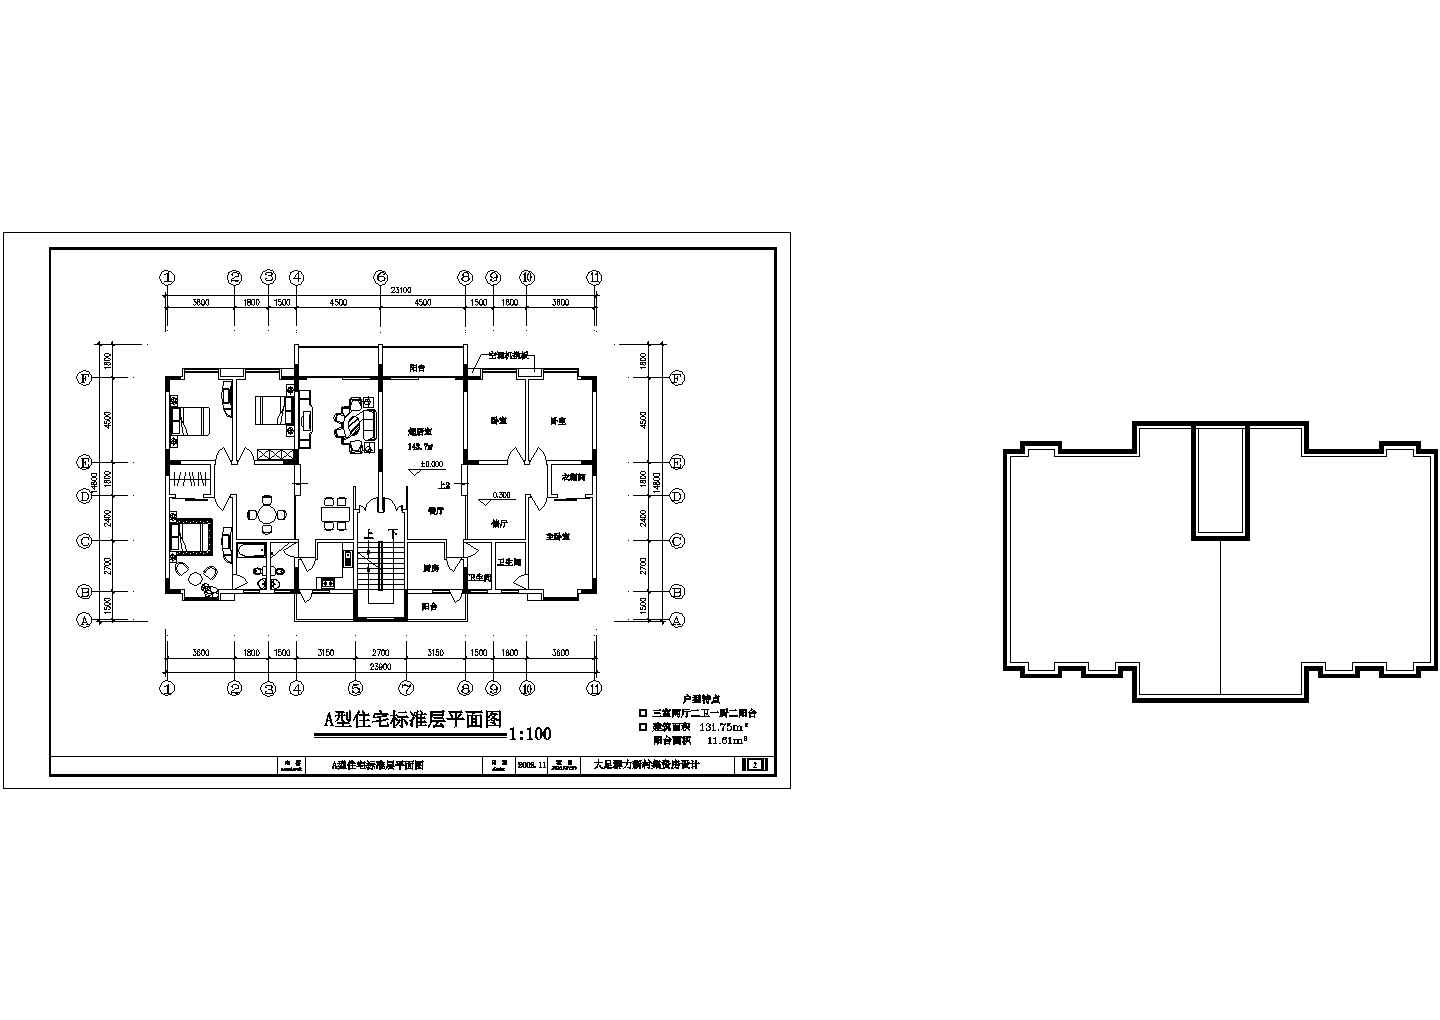 北京北四环某楼盘130平米高档住宅平面布局设计CAD施工图